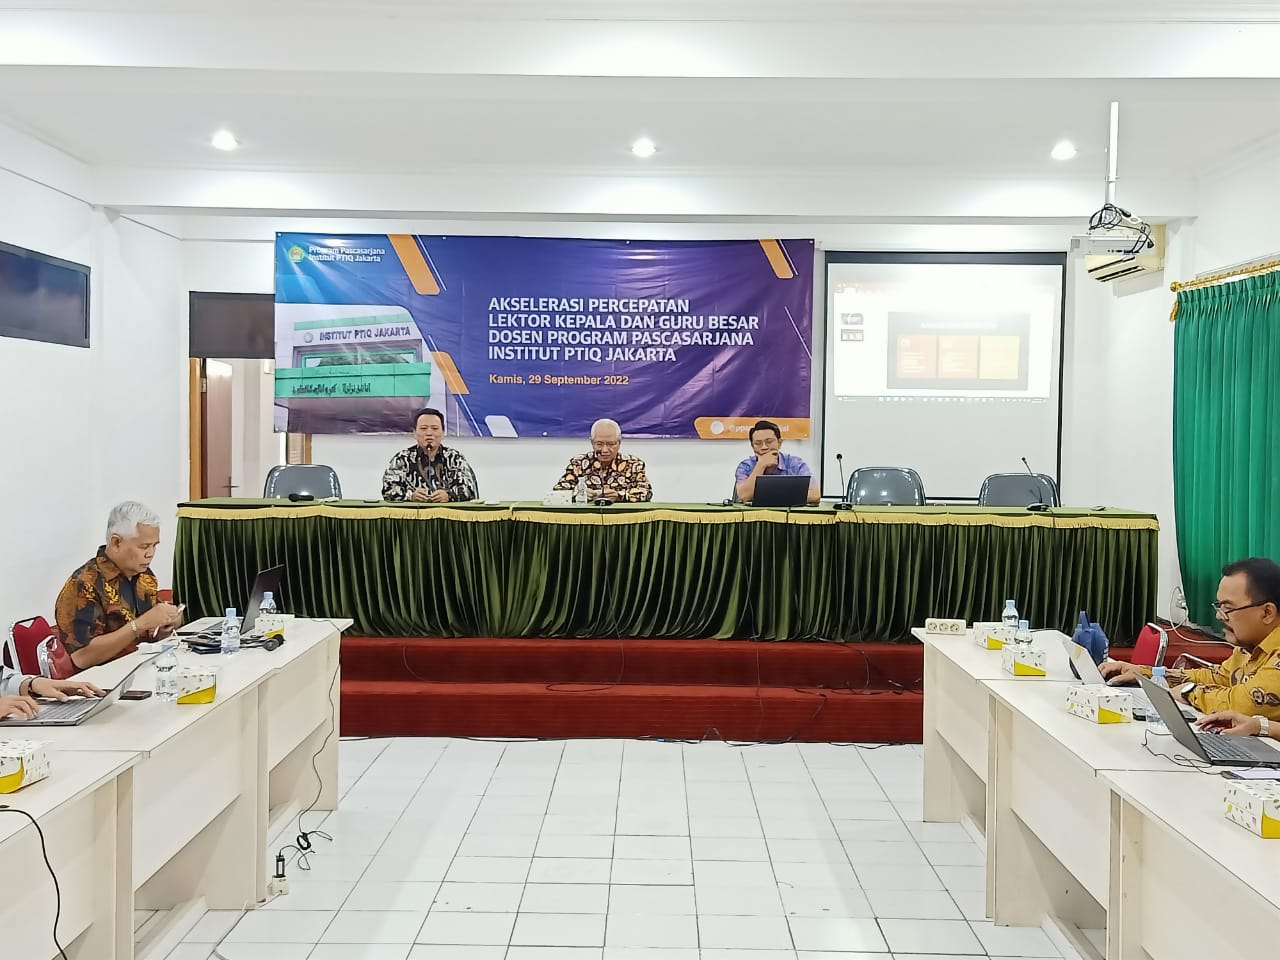 image_Pacu Kualitas, Pascasarjana Institut PTIQ Jakarta Selenggarakan Akselerasi Percepatan Lektor Kepala dan Guru Besar (APLK